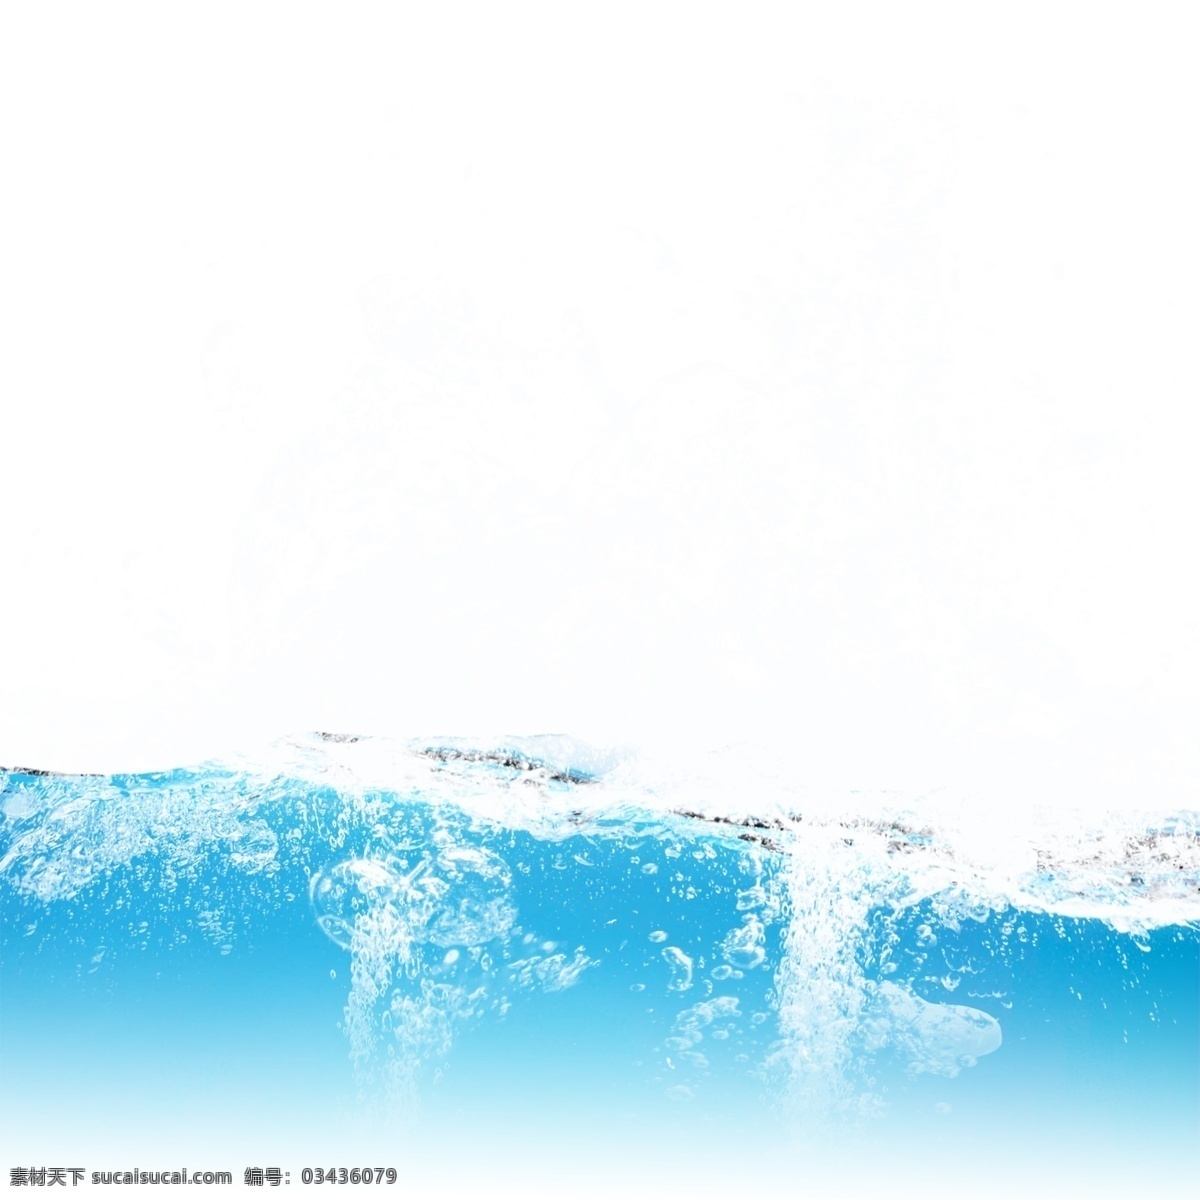 漂浮 水 浪水 波纹 元素 水纹 蓝色 水花 水波纹 水滴 波浪 动感 动感水 动感水浪 动感水纹 飞溅 水圈 喷溅 漂浮的水